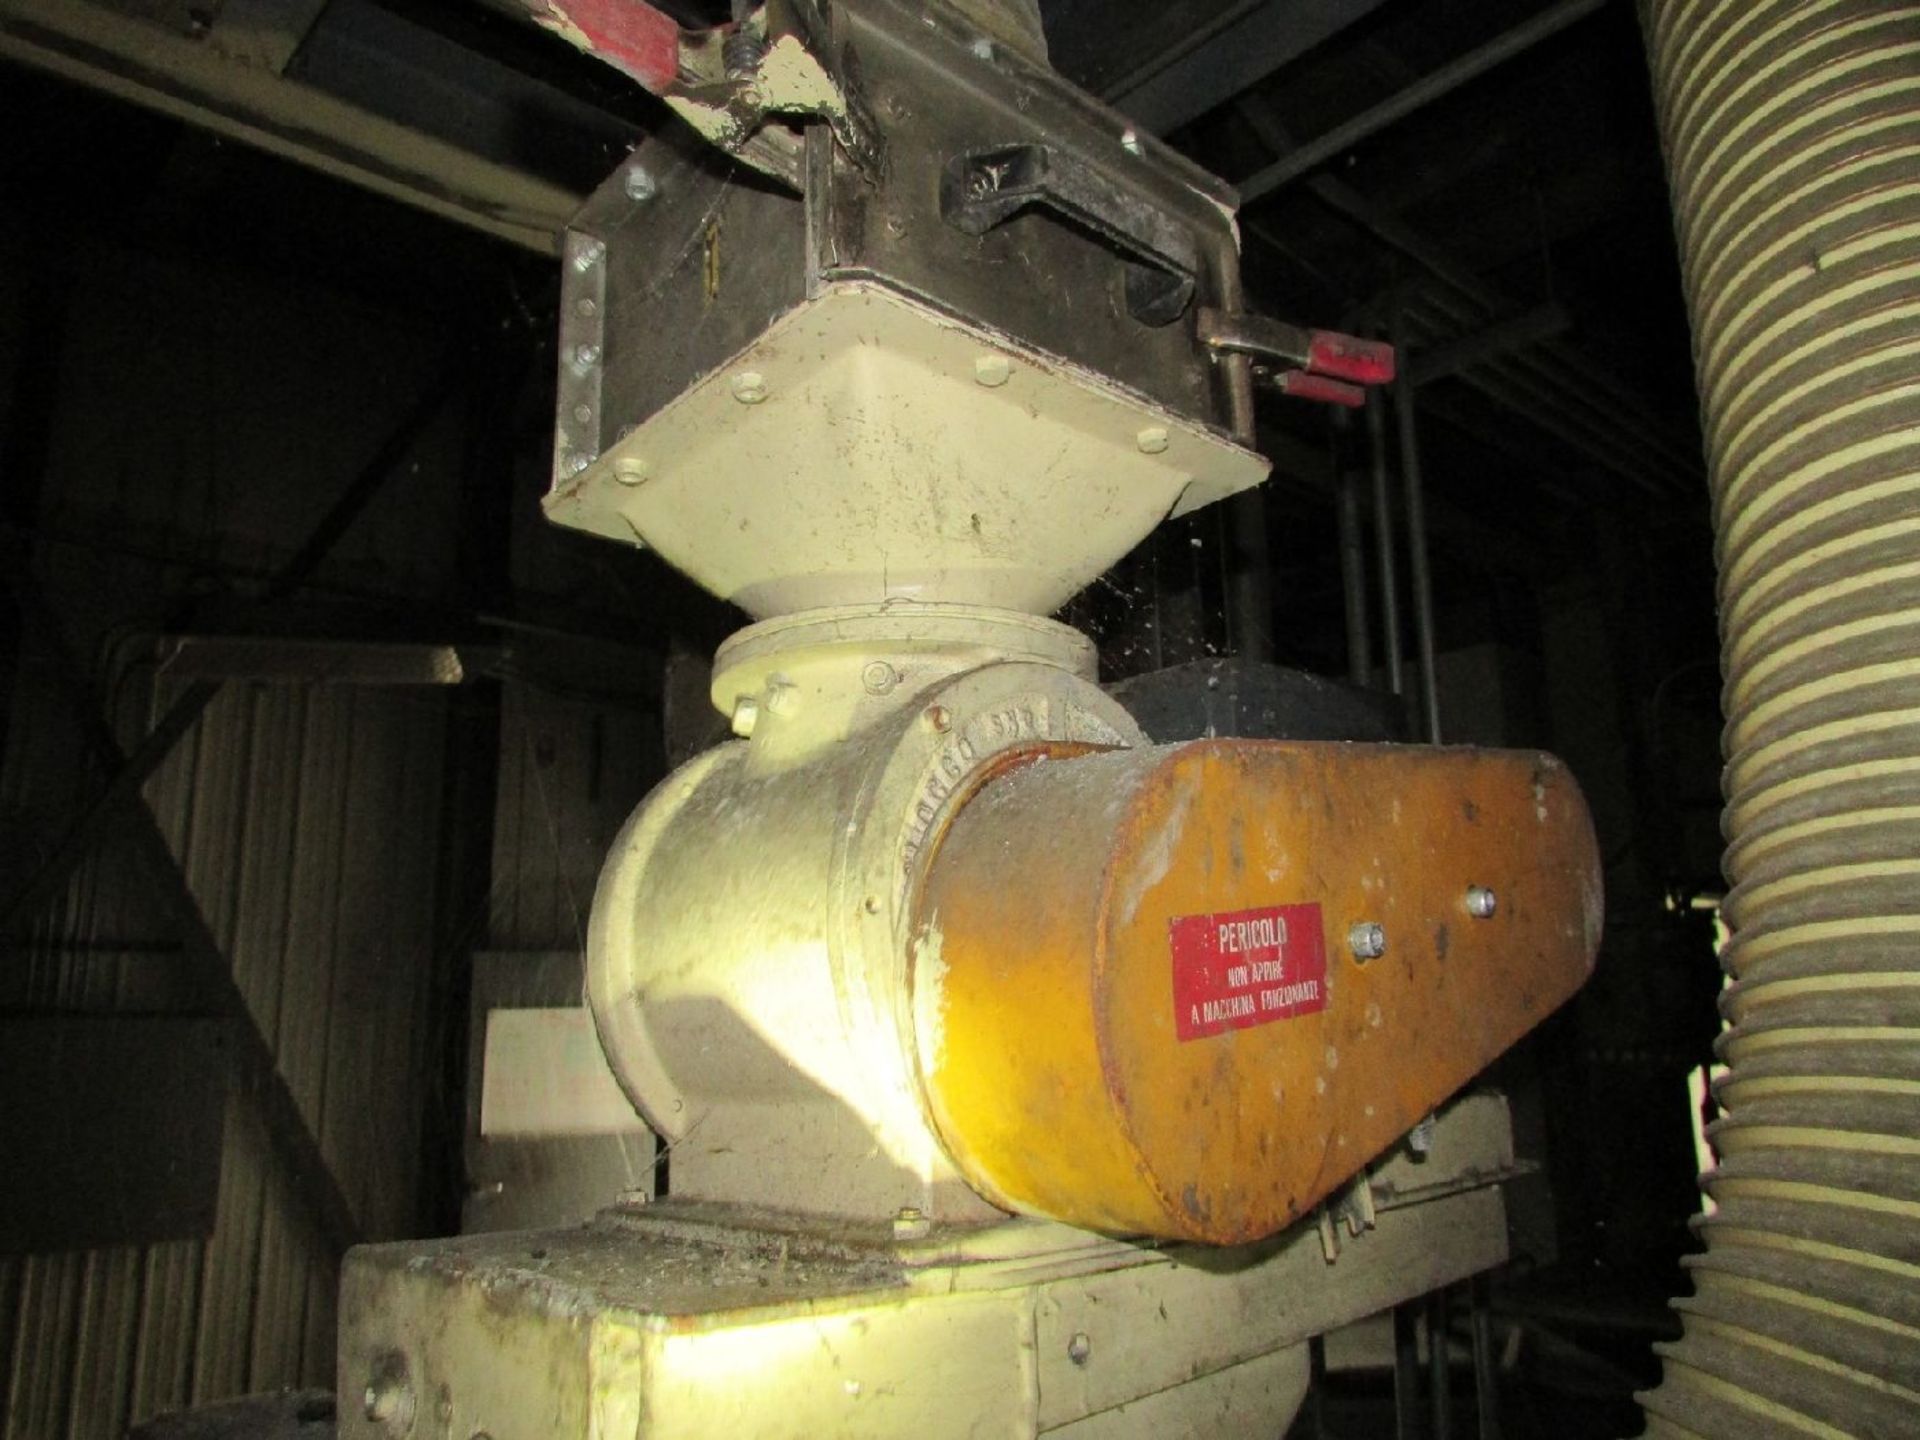 Italo Danioni-Milano Model 524 Pin Mill (Processing) - Image 5 of 6